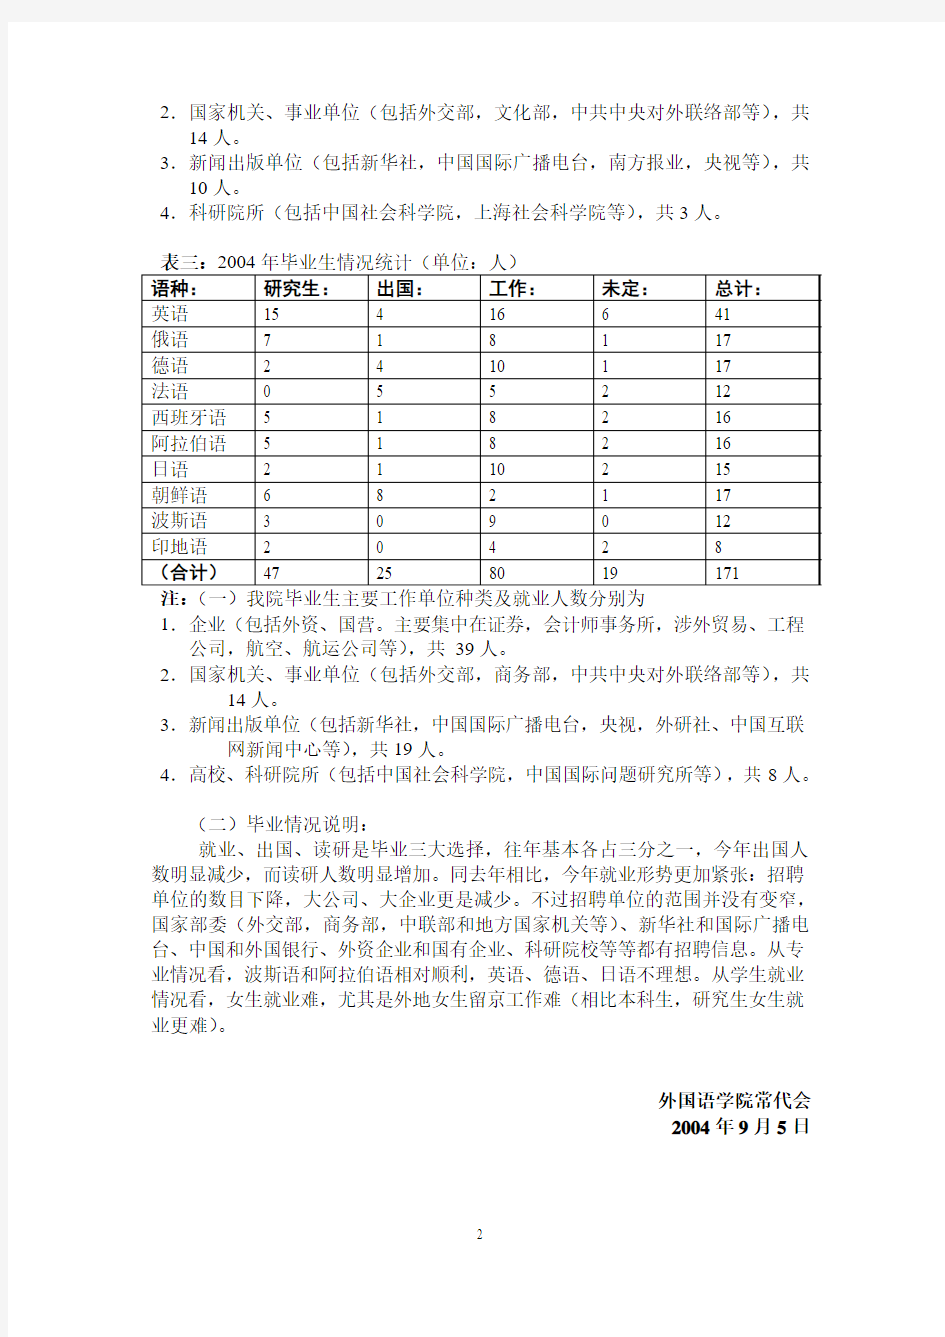 北京大学2002——2004年毕业生毕业去向情况调查统计表